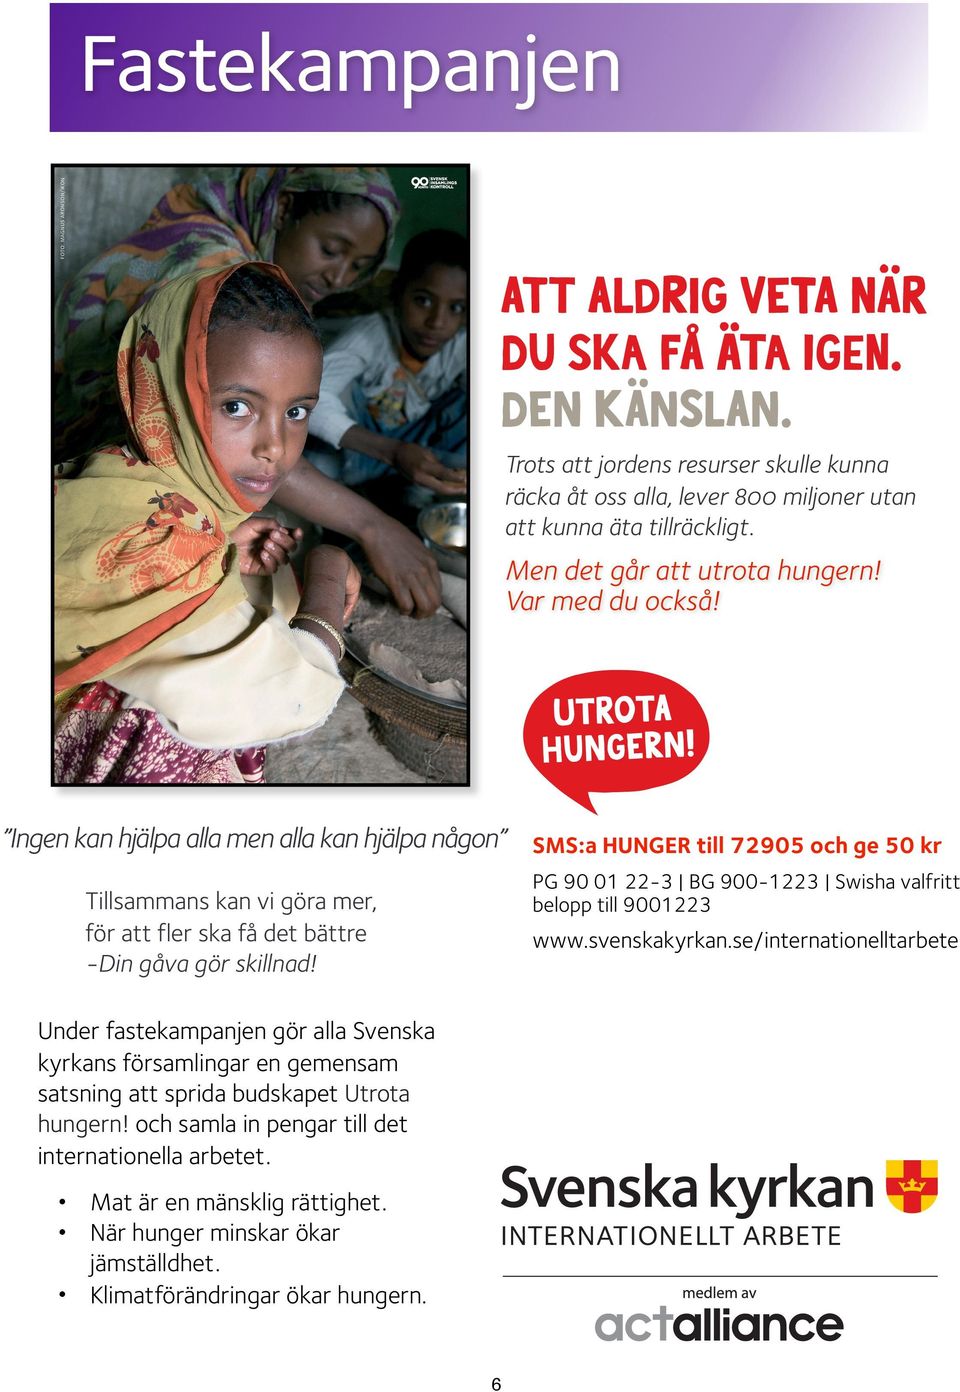 SMS:a HUNGER till 72905 och ge 50 kr till utbildning, lån och sparande samt hållbara Tusen barnjordbruksmetoder.